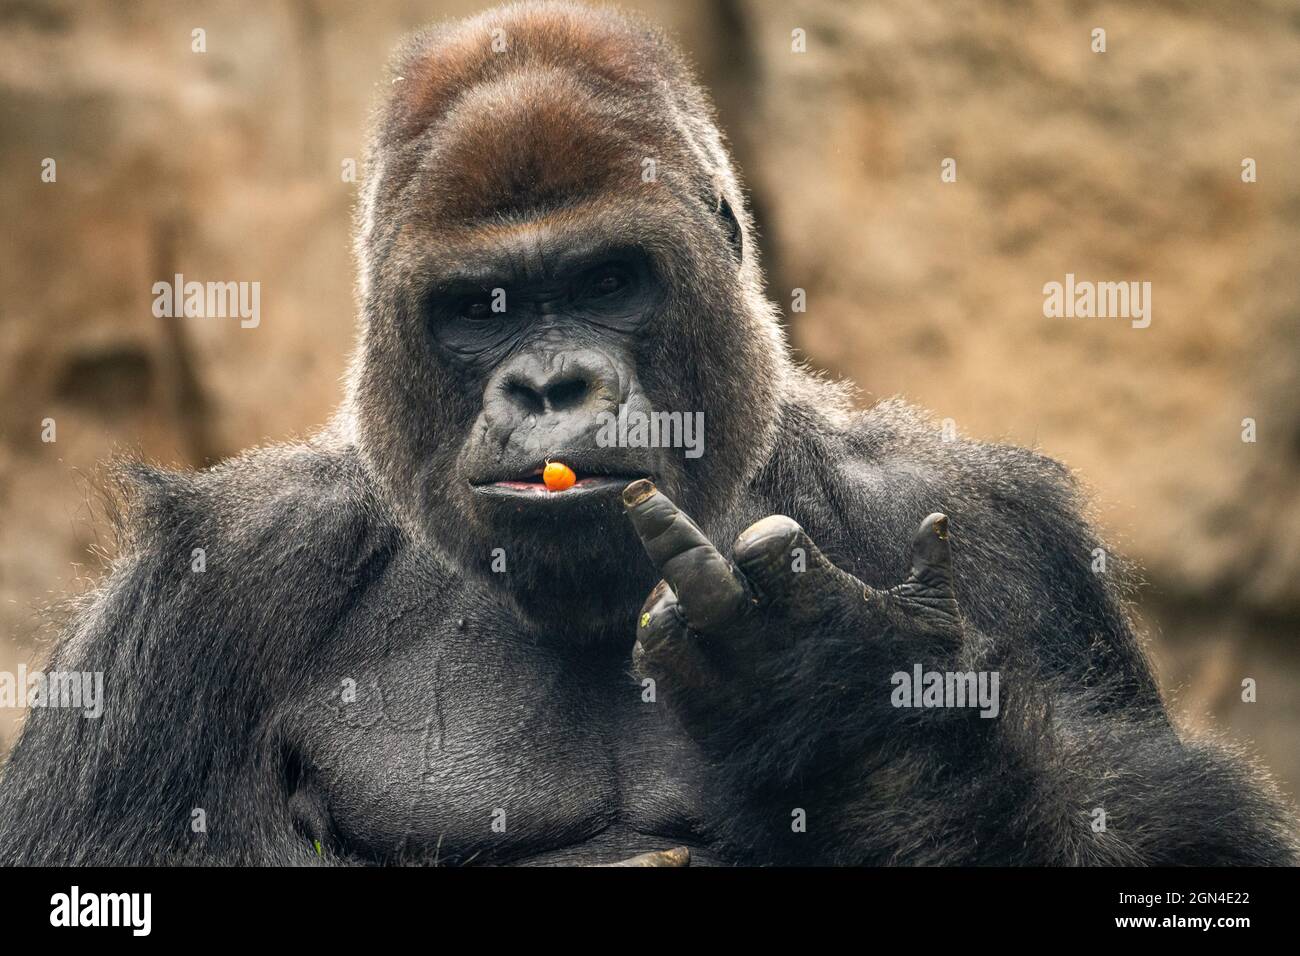 Quand un gorille fait un doigt d'honneur aux visiteurs d'un zoo